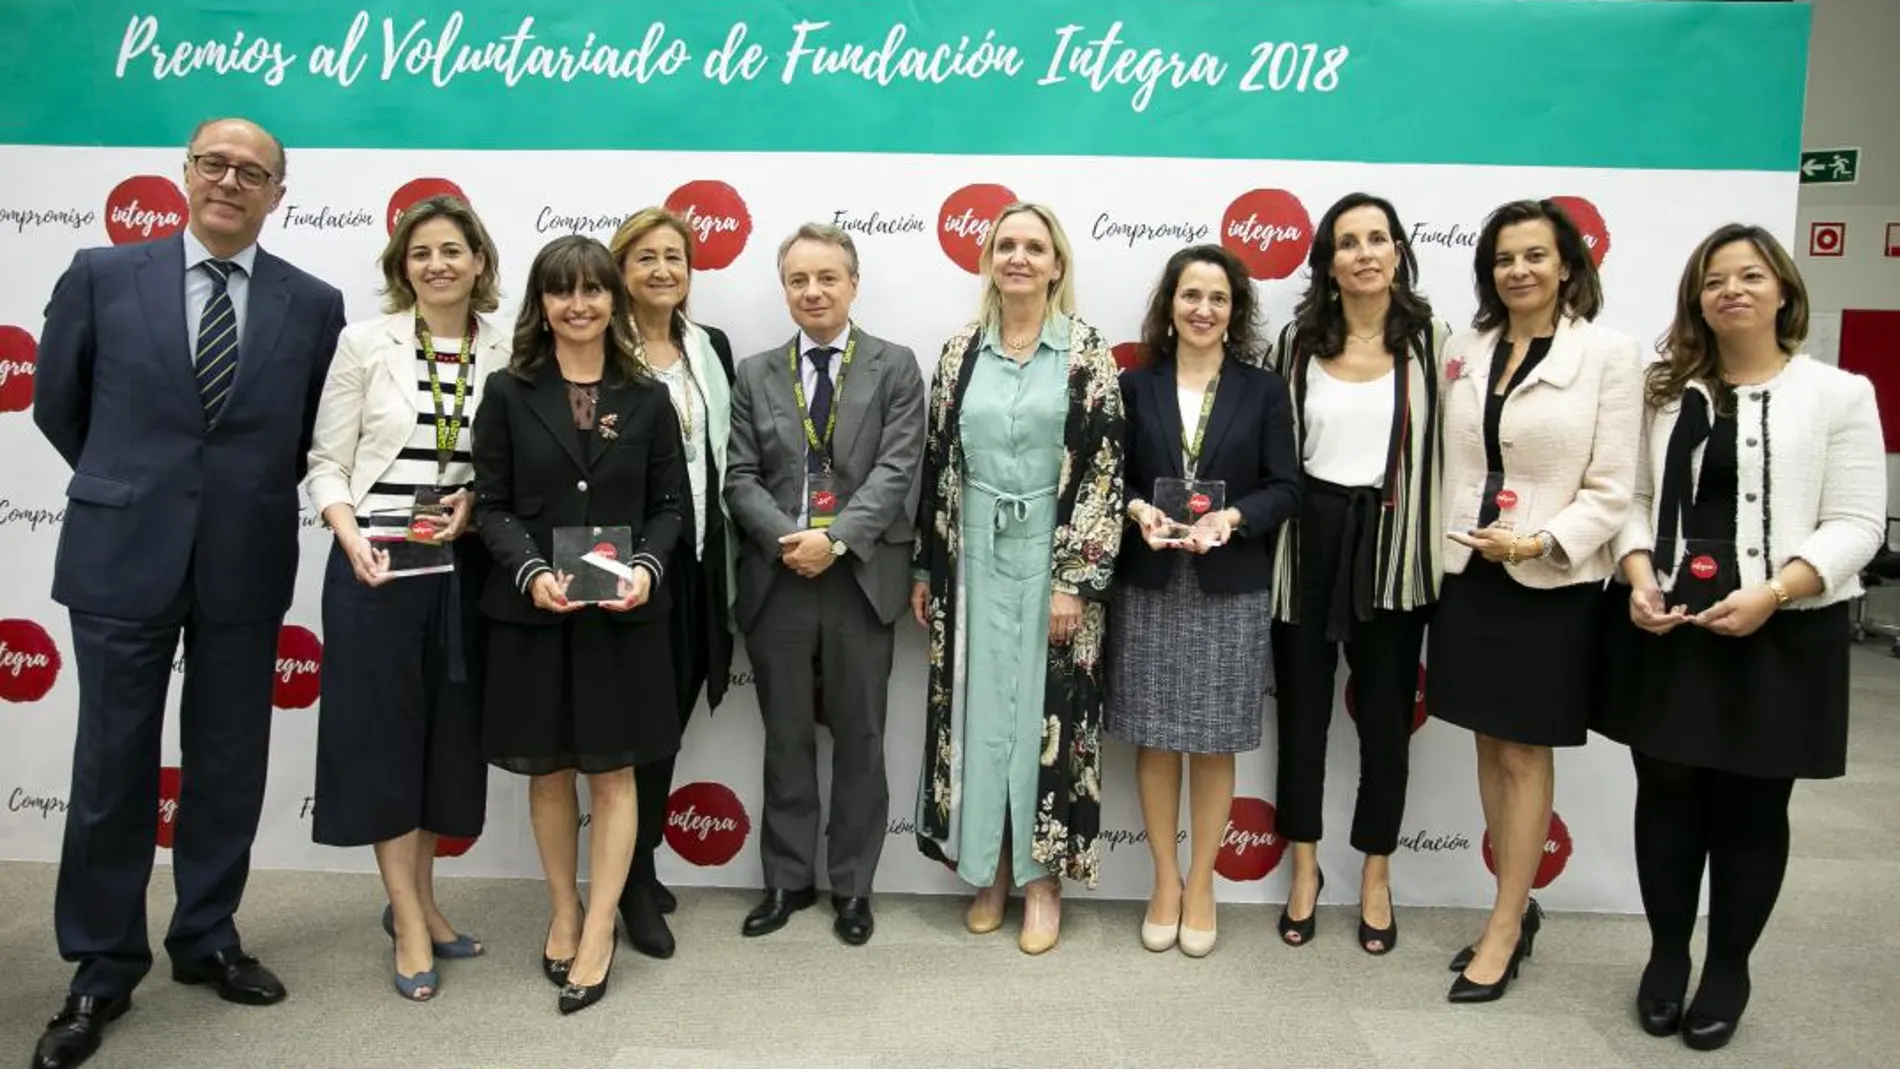 Entrega de premios al Voluntariado Corporativo Fundación Integra